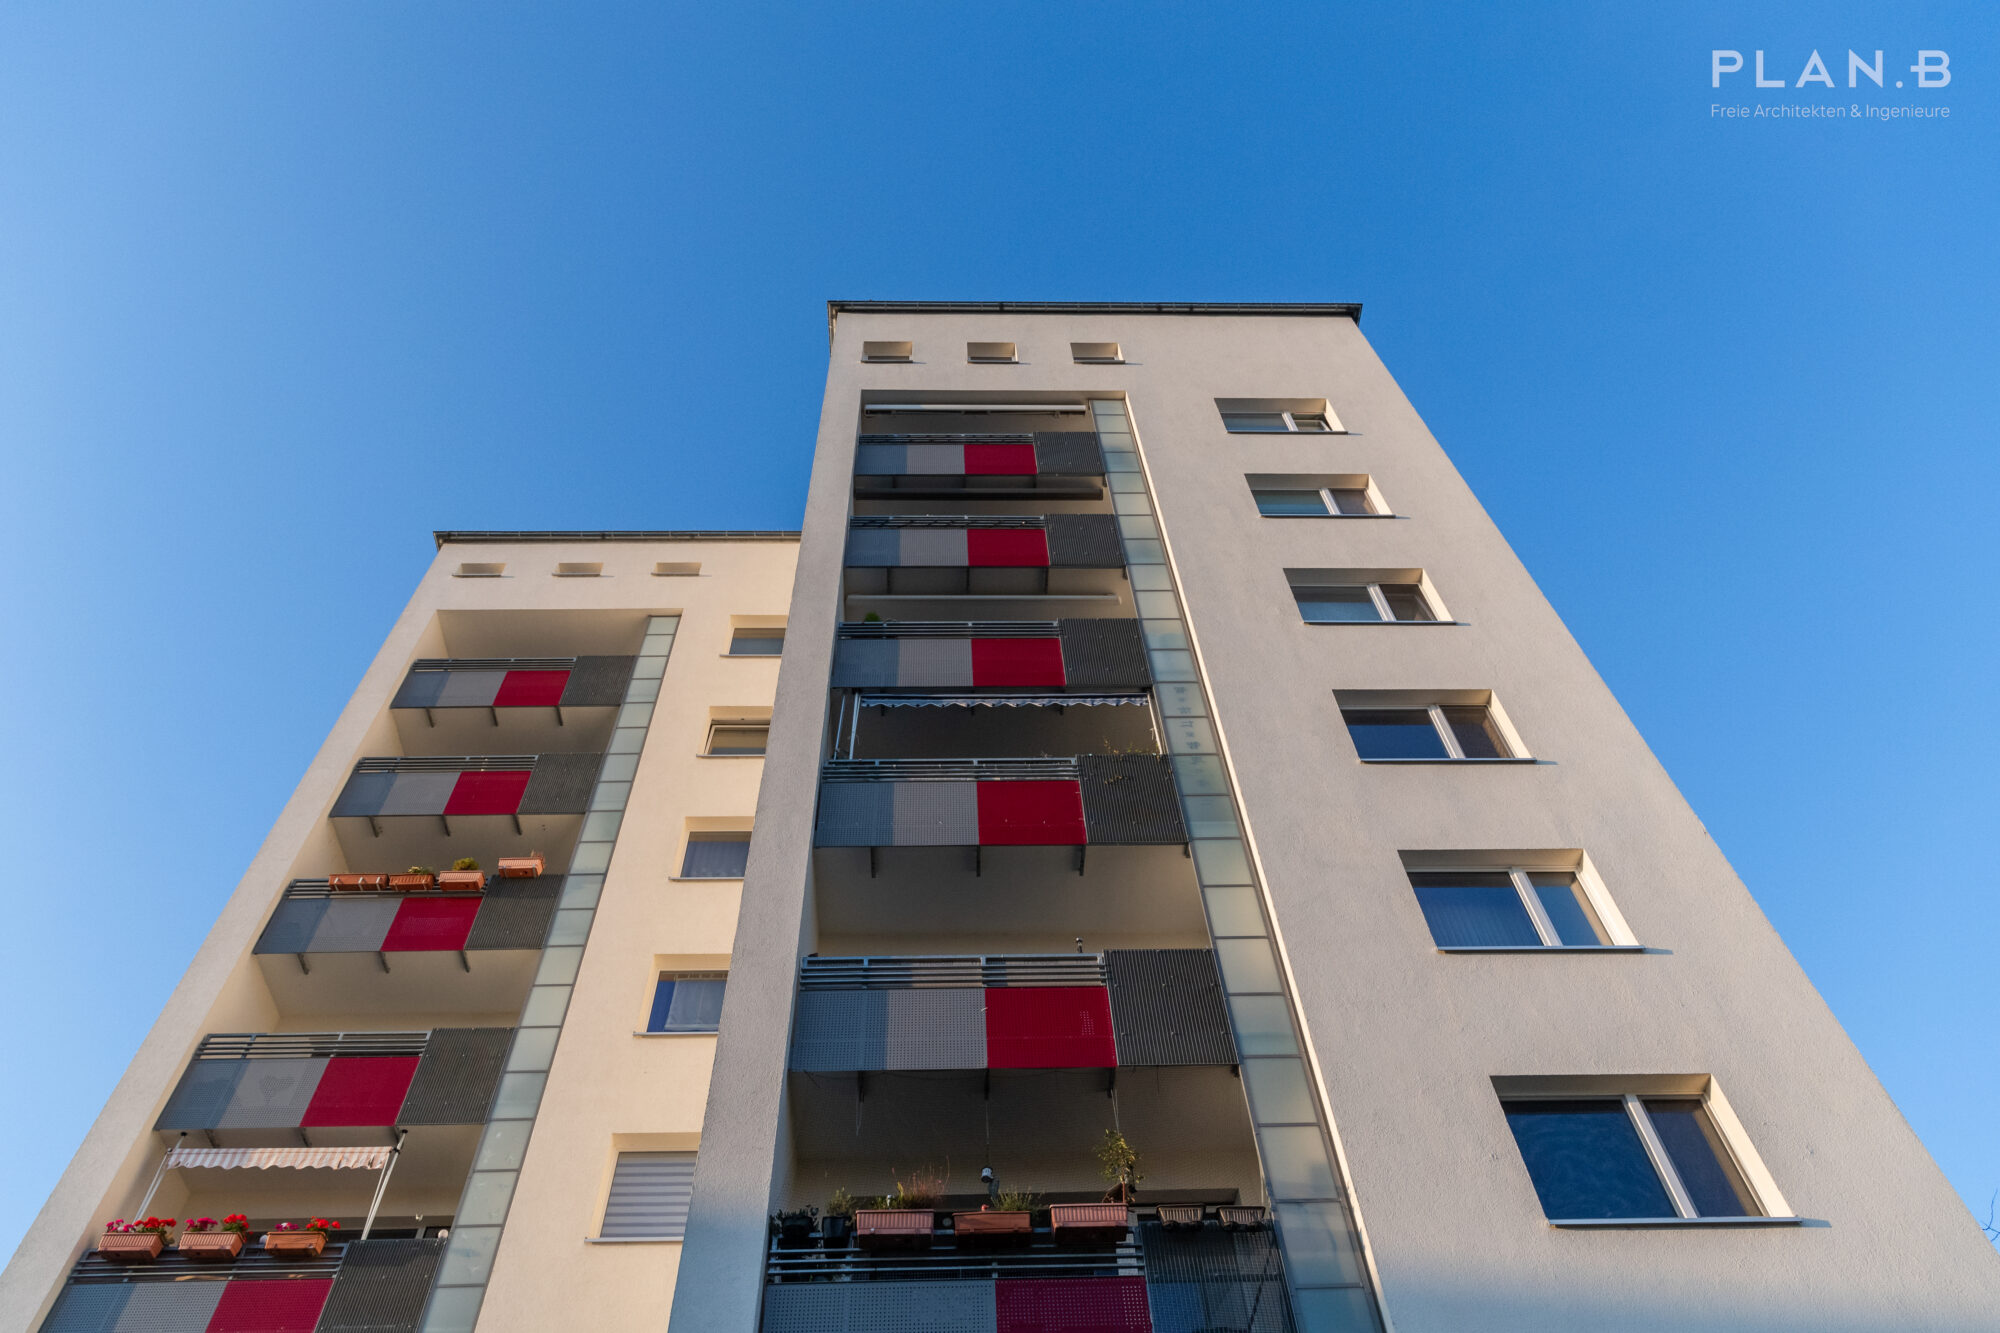 Quartierserneuerung und energetische Sanierung eines Wohnquartiers in Wiesbaden